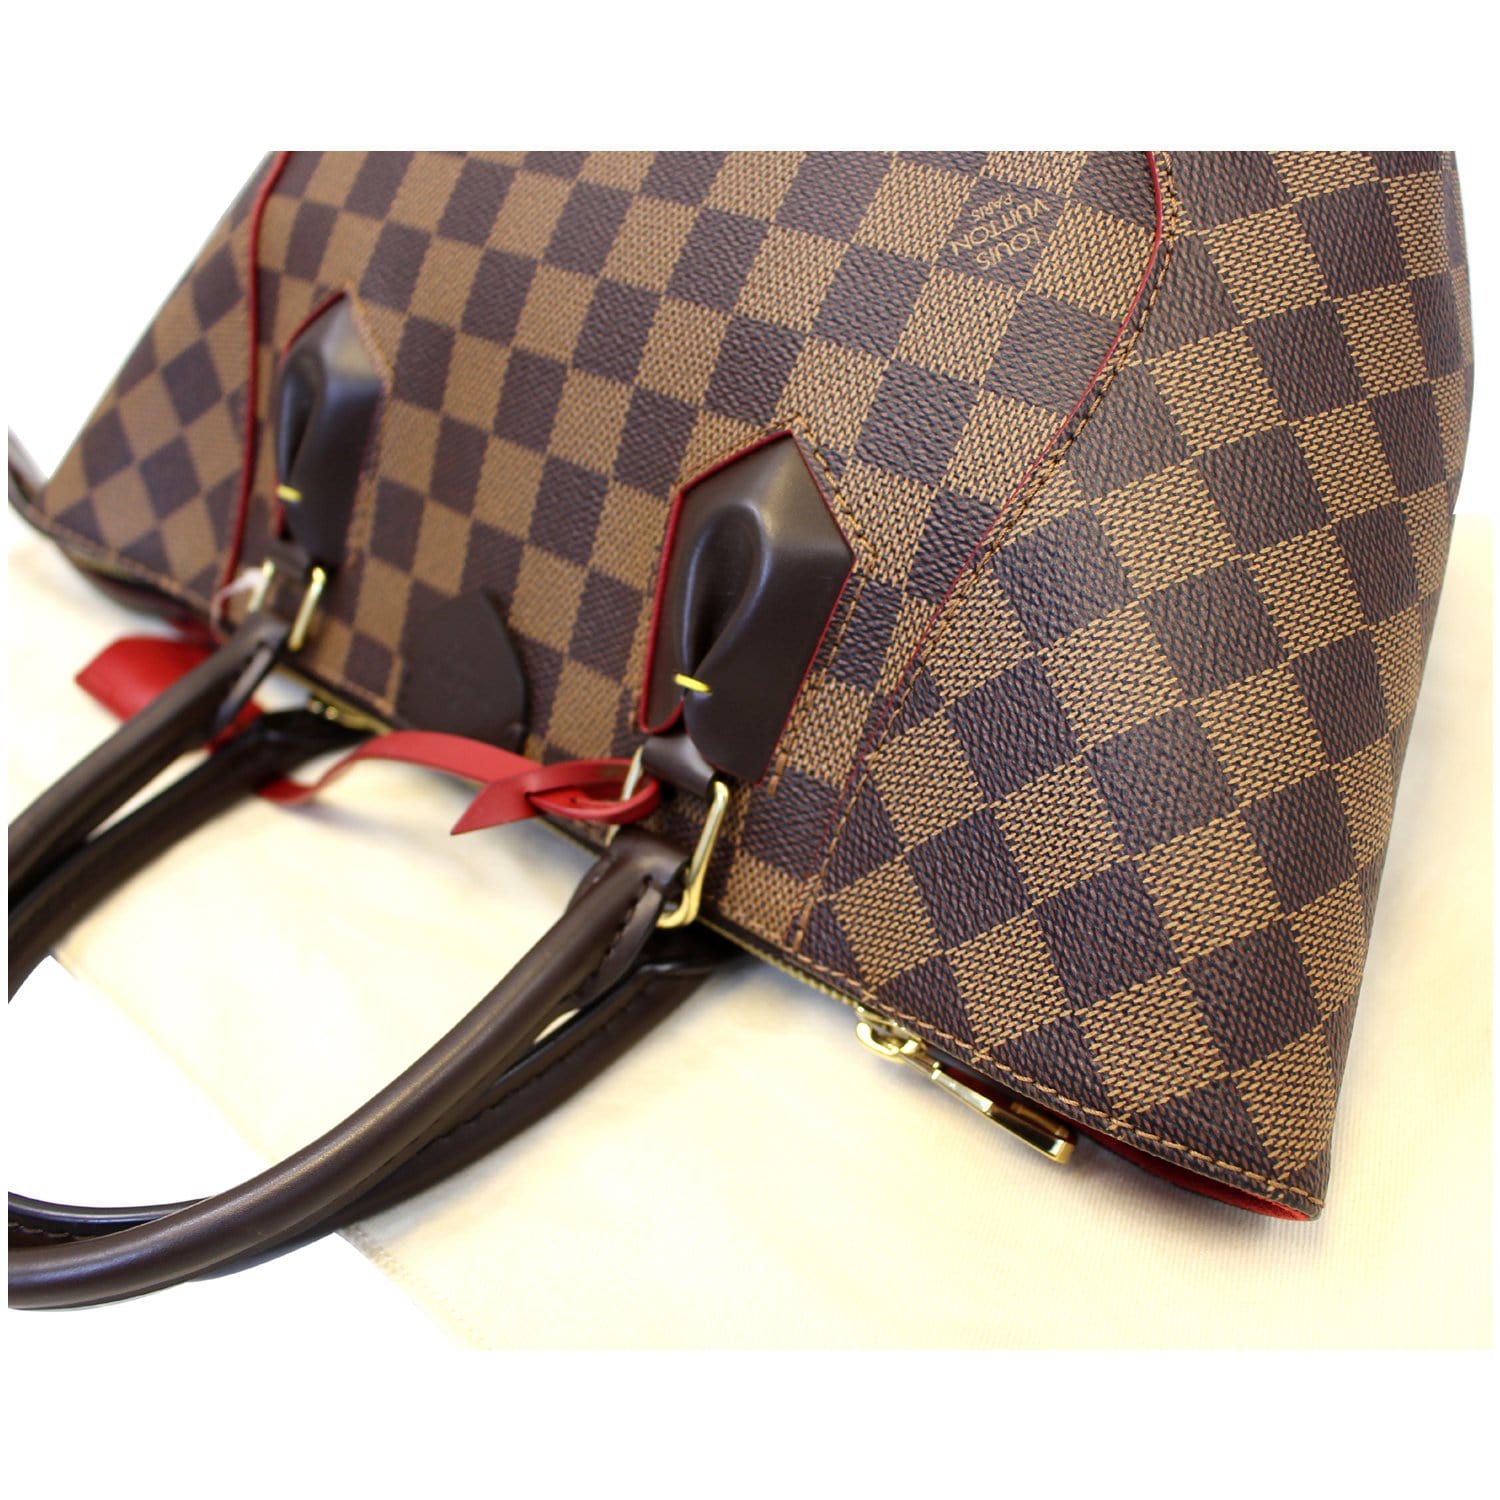 Louis Vuitton Caissa totePM Womens tote bag N41551 cerise Cloth